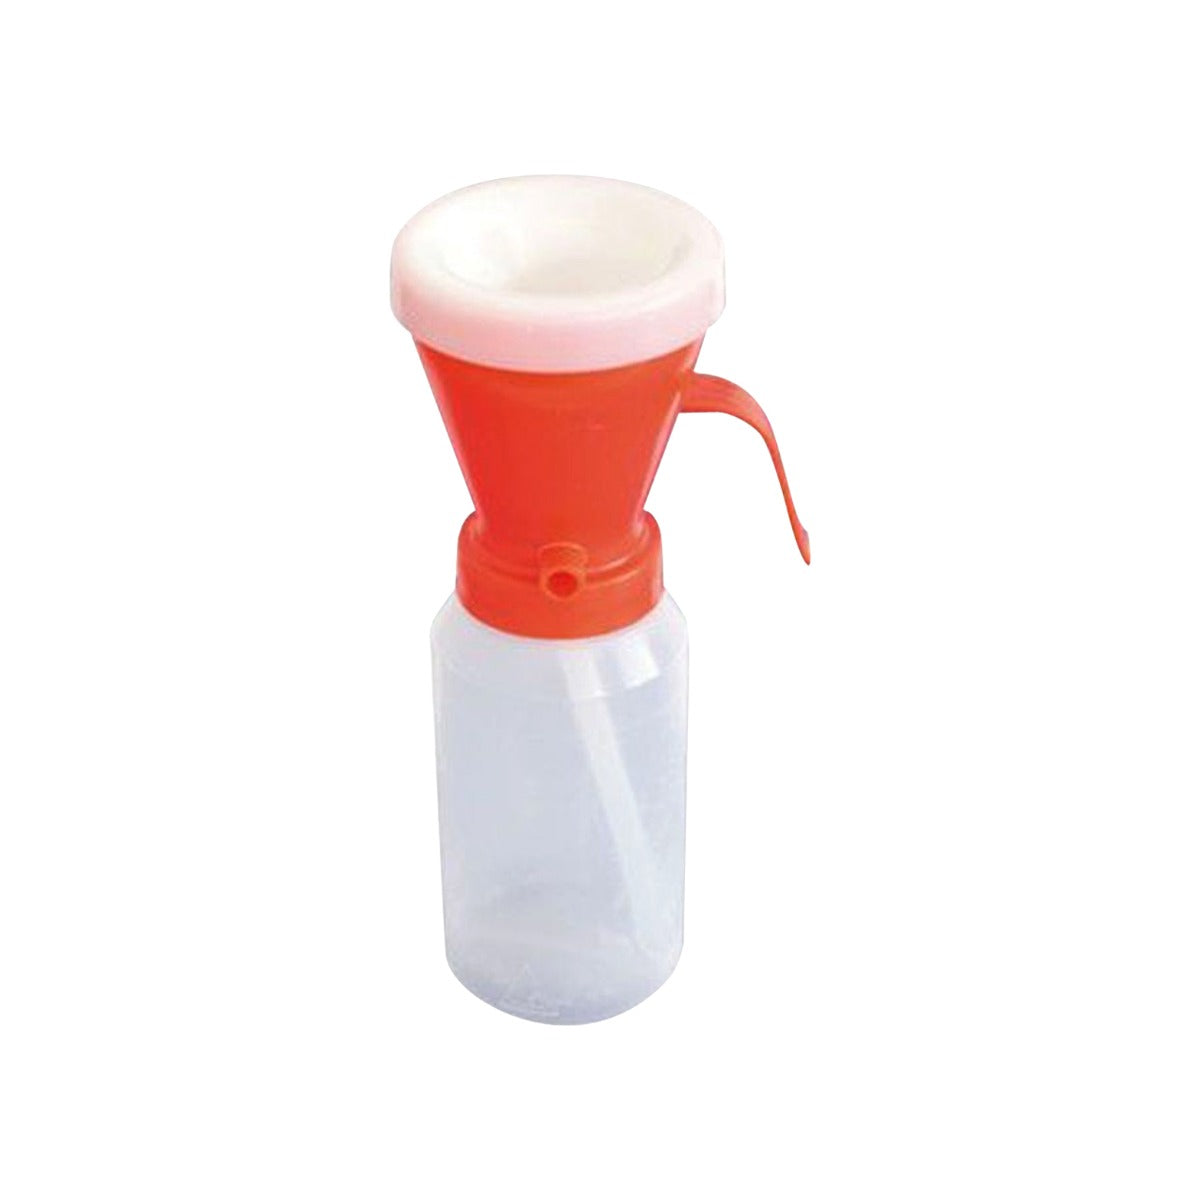 Tettarella Dip Cups in Plastica per Bovini - Colore Rosso